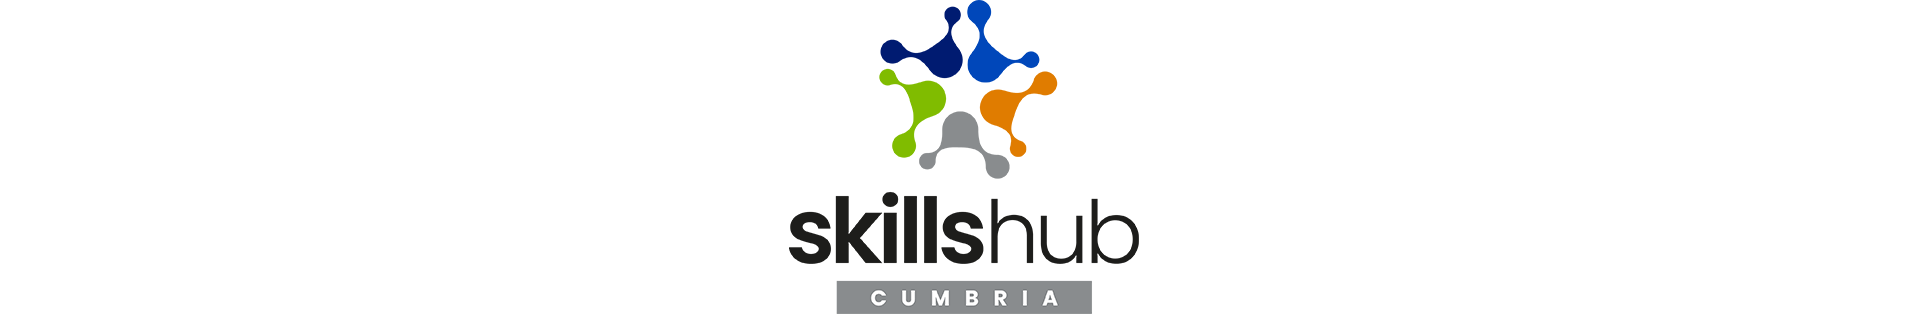 Skills Hub Cumbria